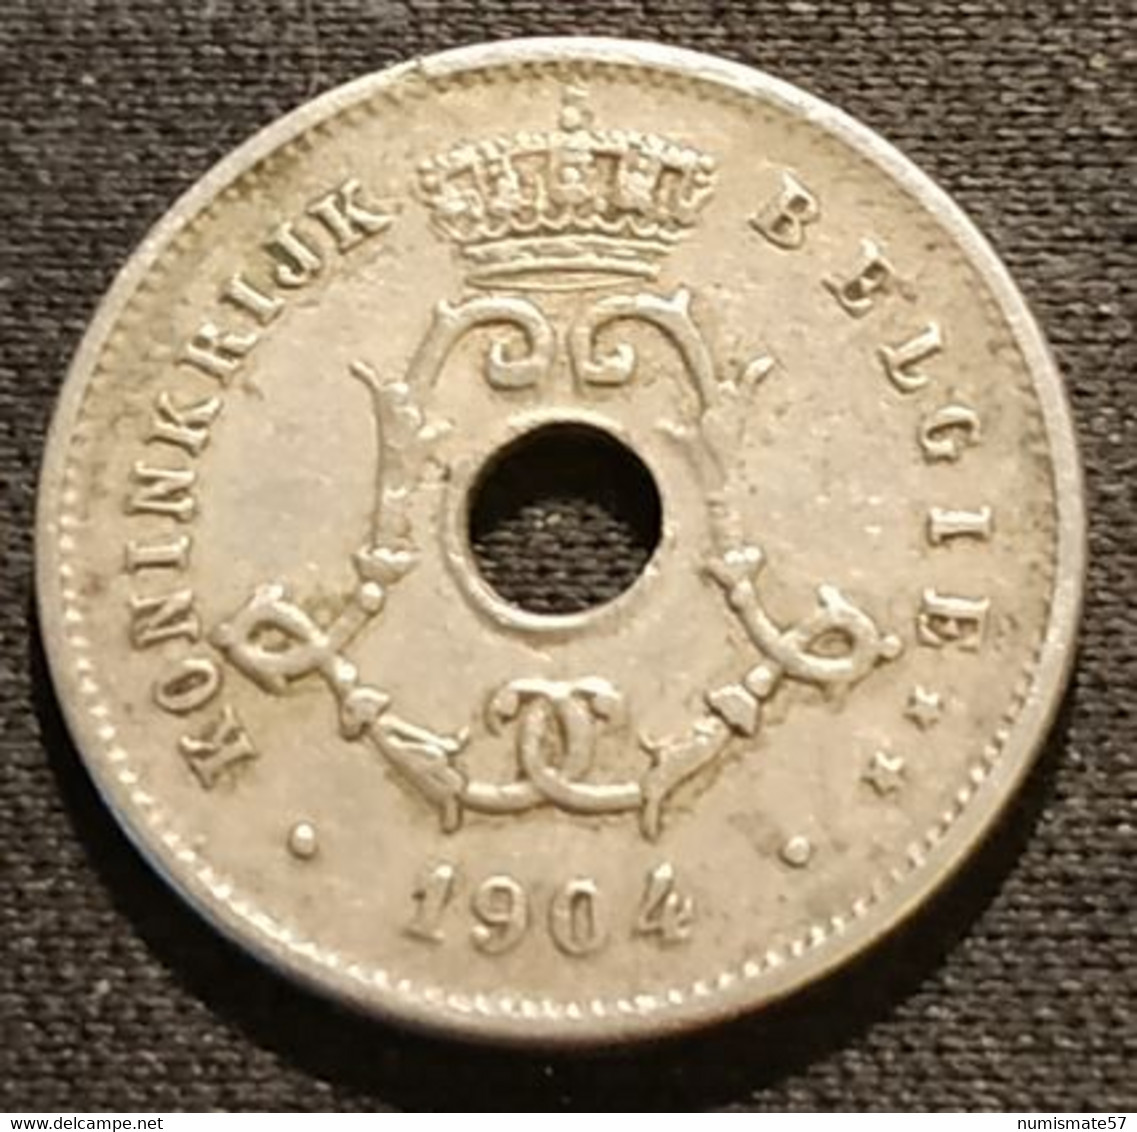 BELGIQUE - BELGIUM - 5 CENTIMES 1904 - Légende NL - Léopold II - Type Michaux - KM 55 - 5 Cents